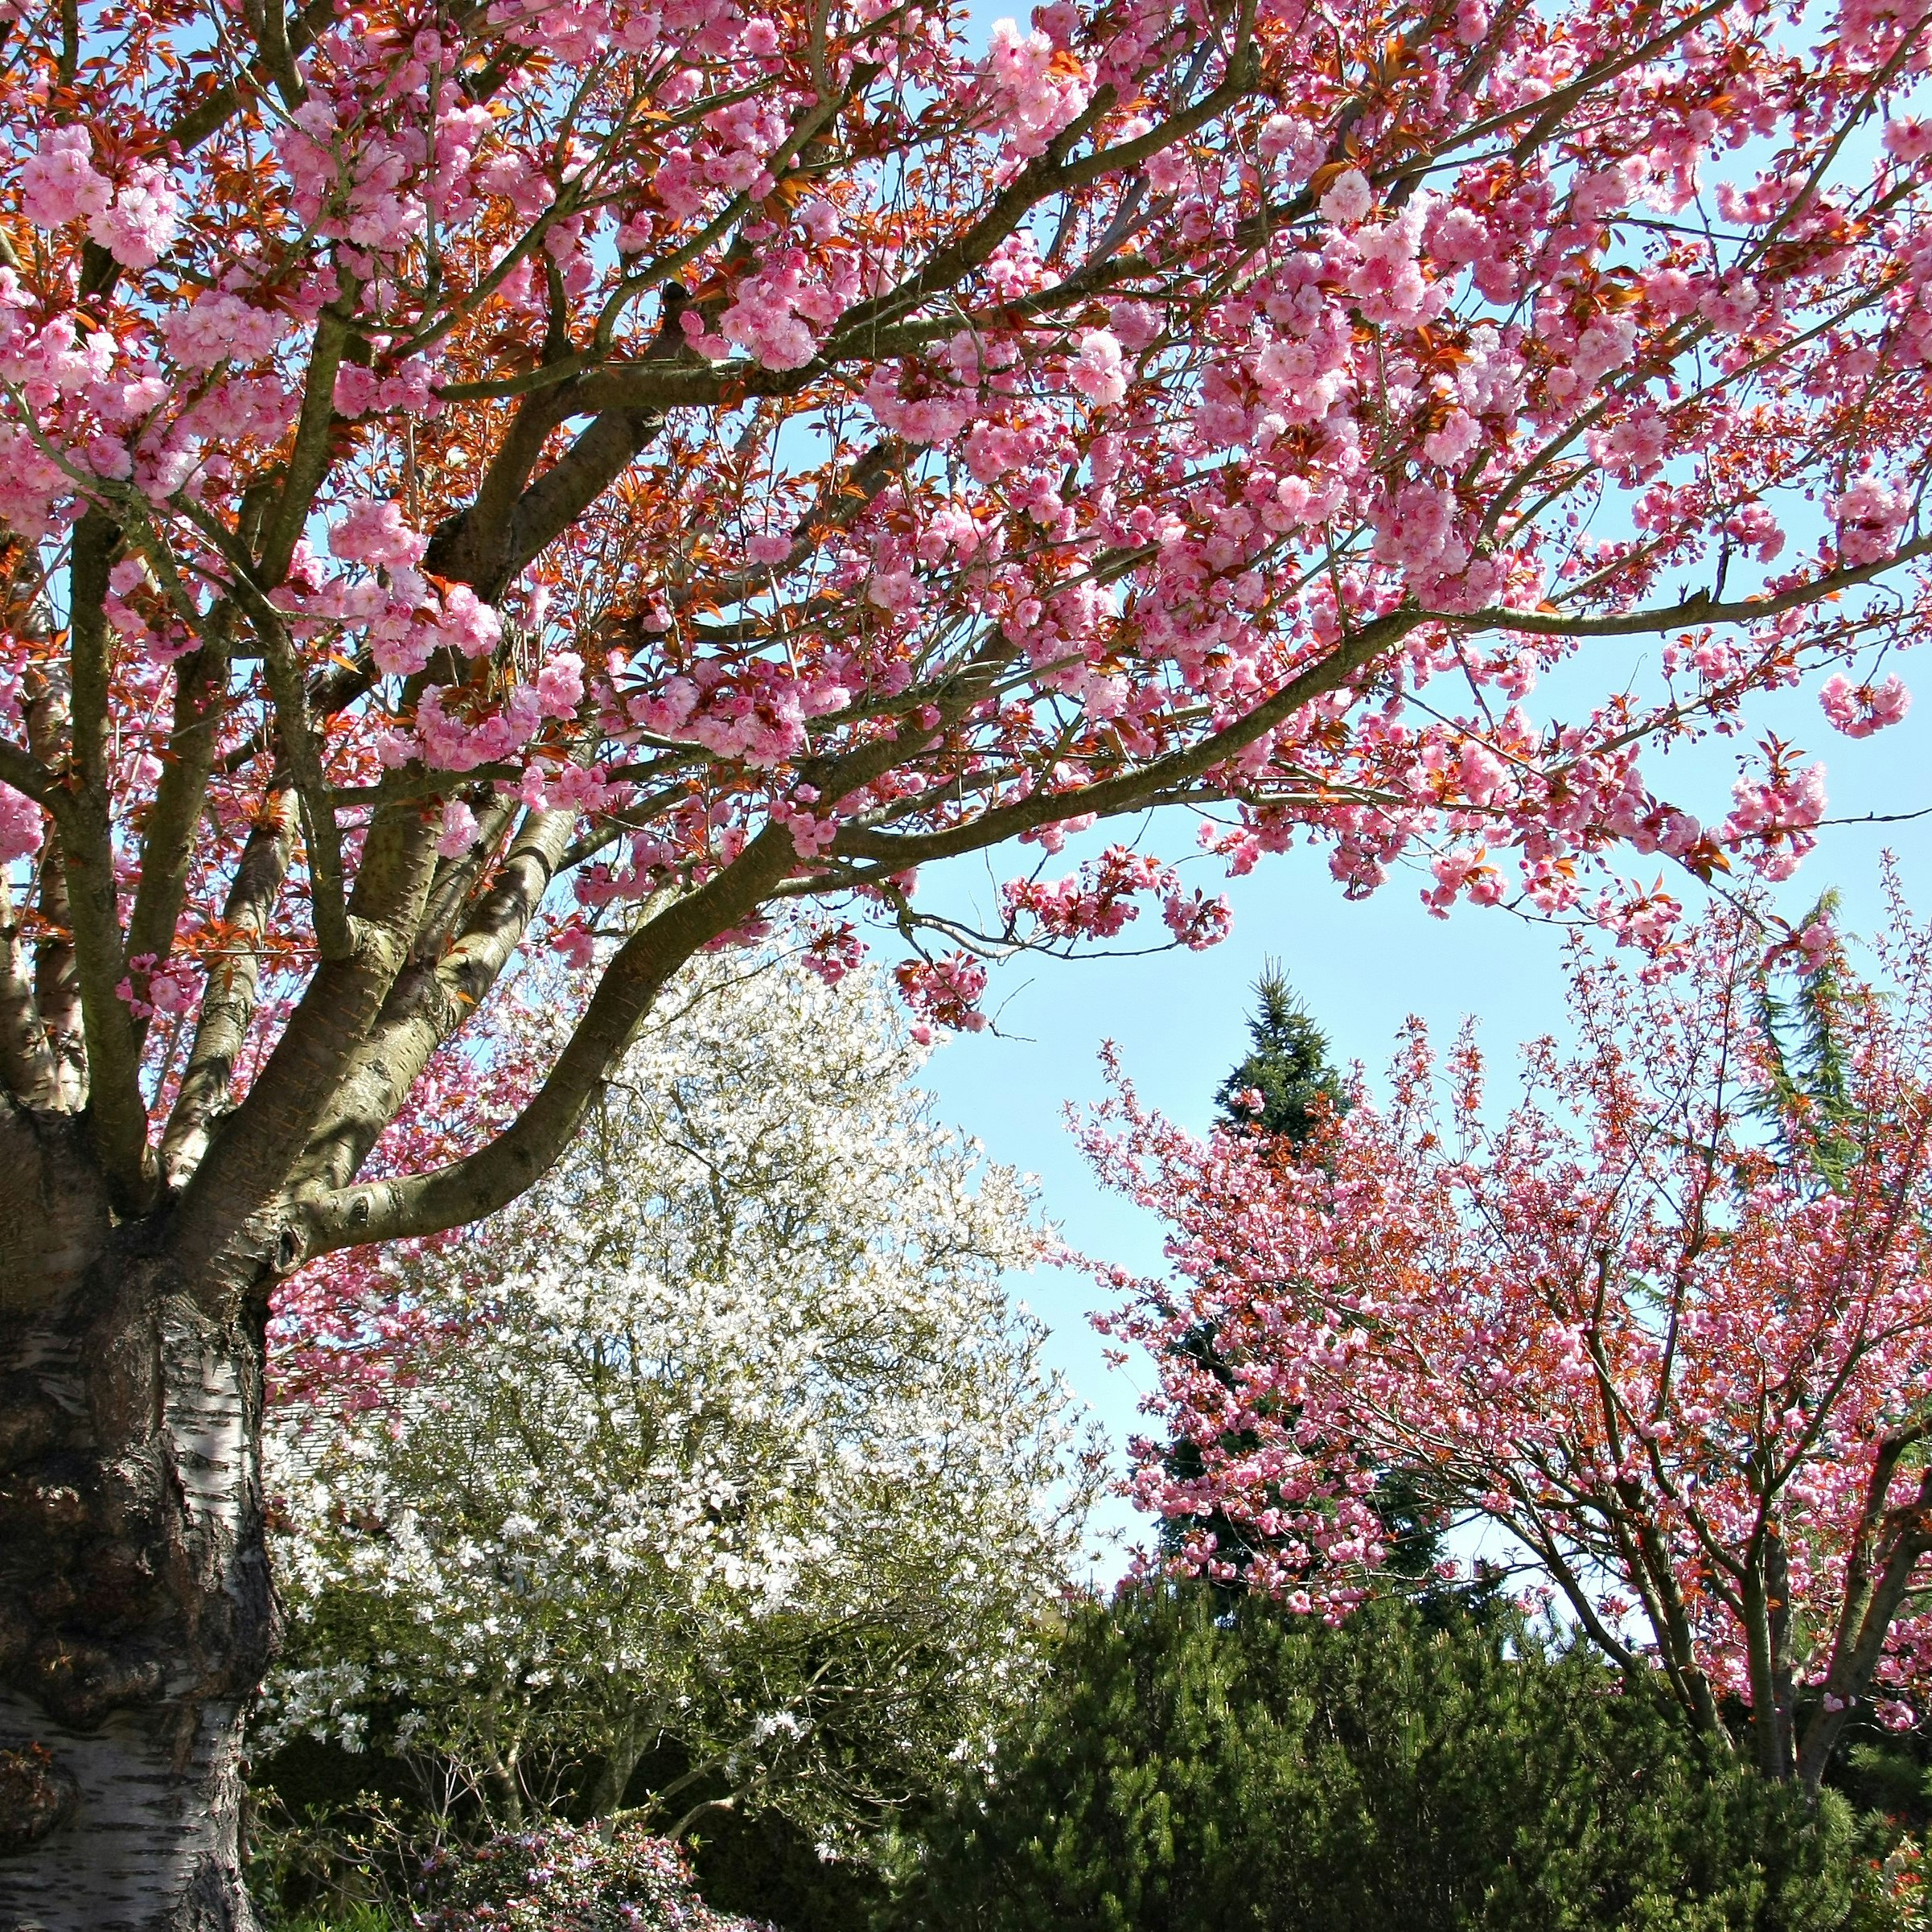 Inspiration til IG: Her finder du de flotte kirsebærtræer 